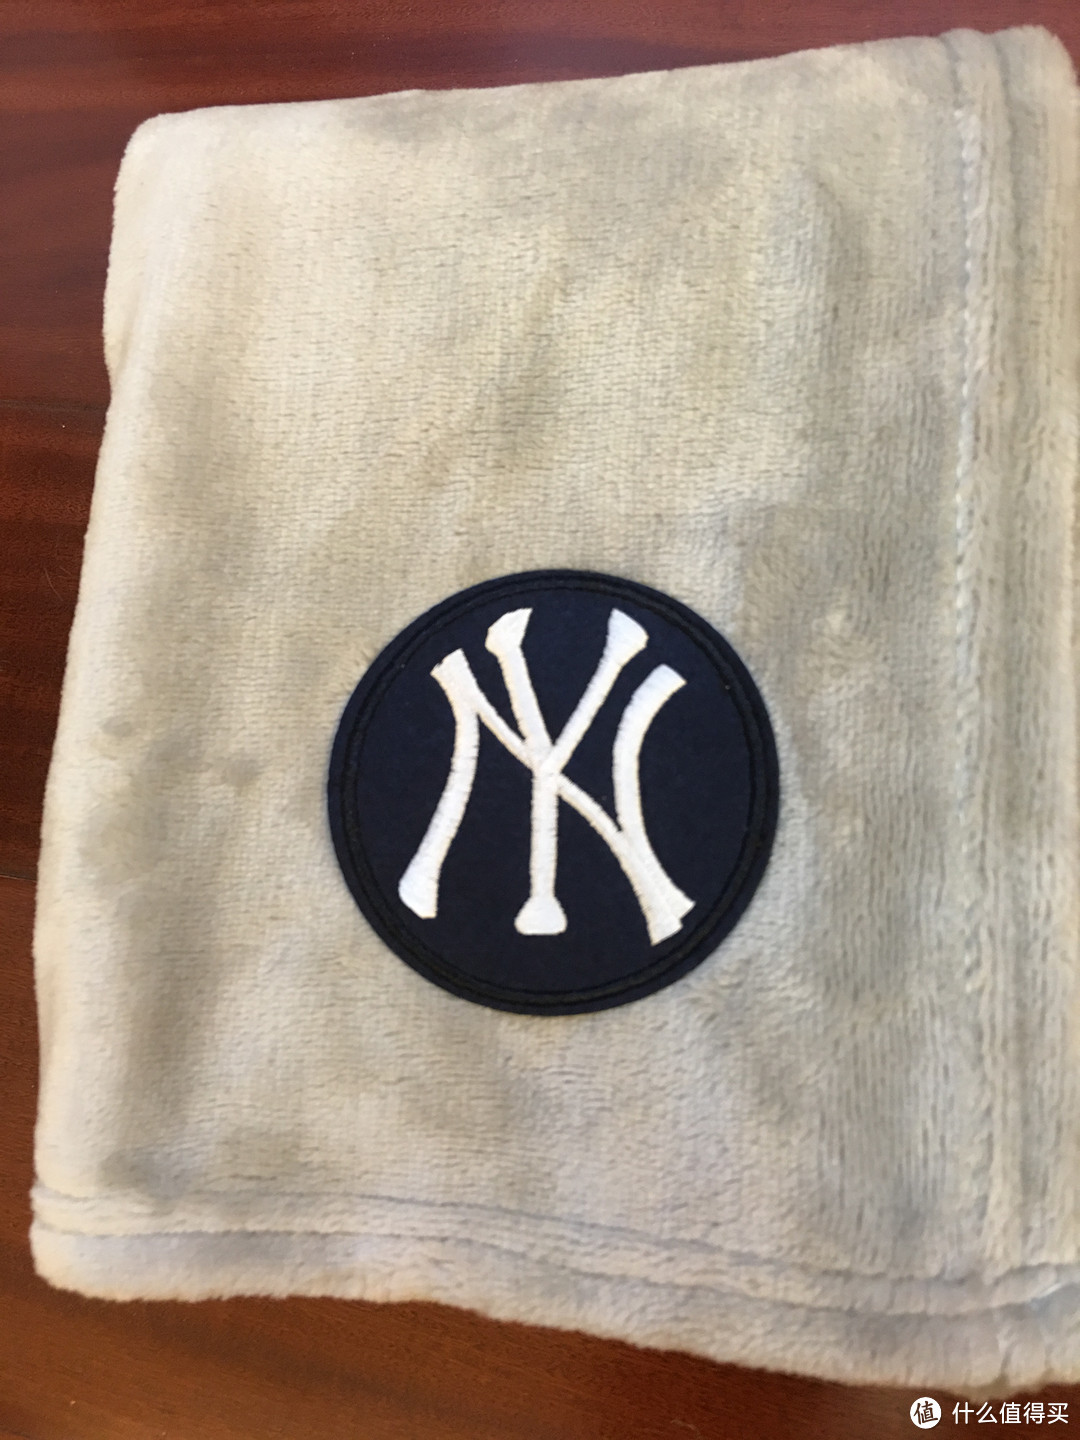 小侄子百天收到小叔子的礼物：Yankees 扬基队 婴童礼盒